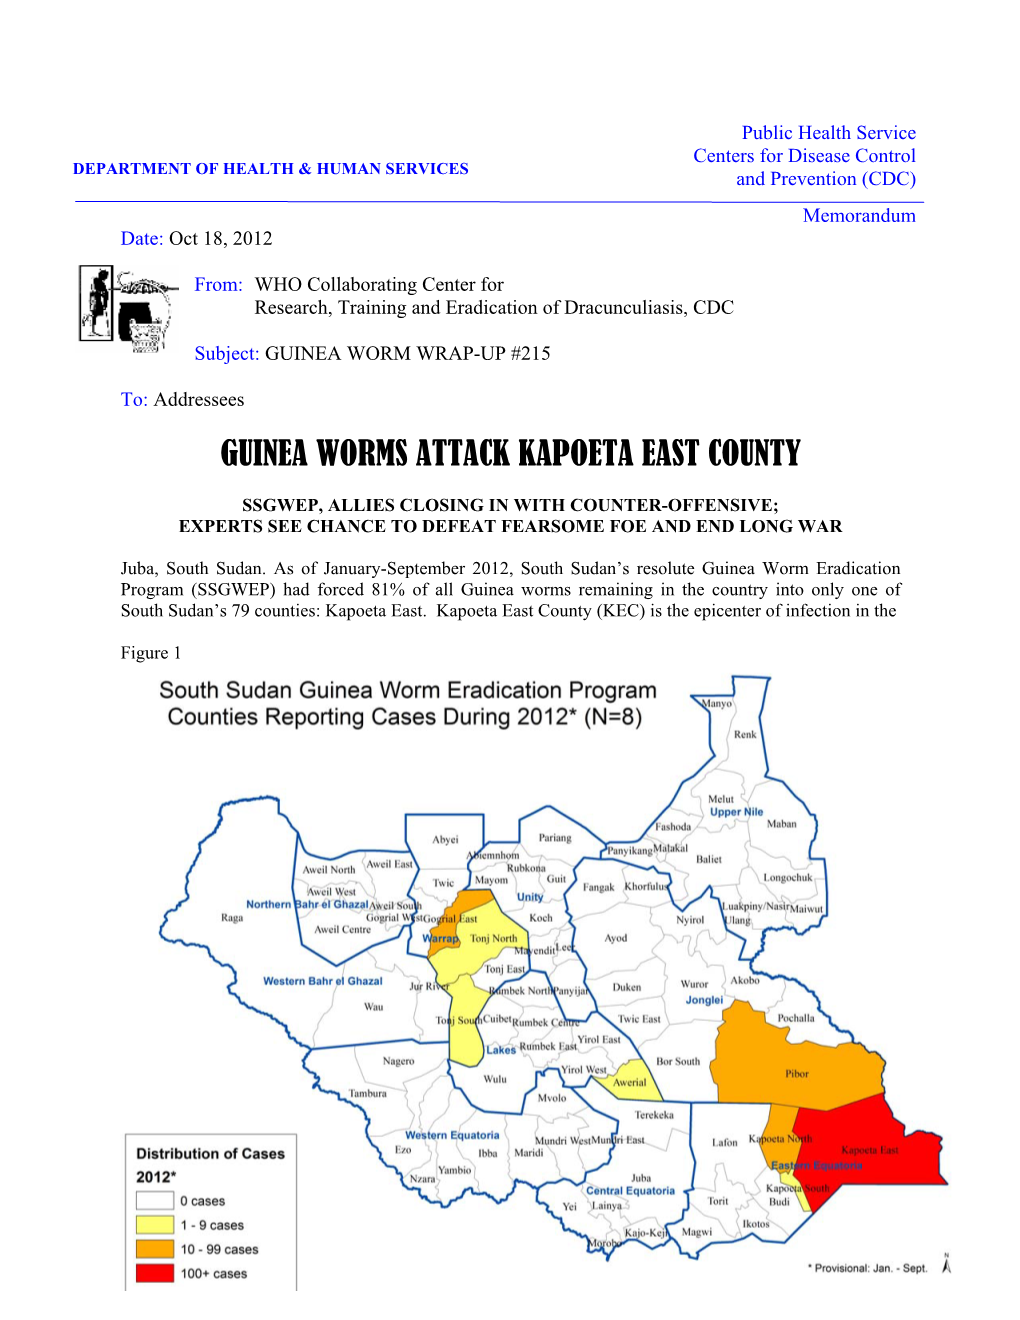 Guinea Worms Attack Kapoeta East County